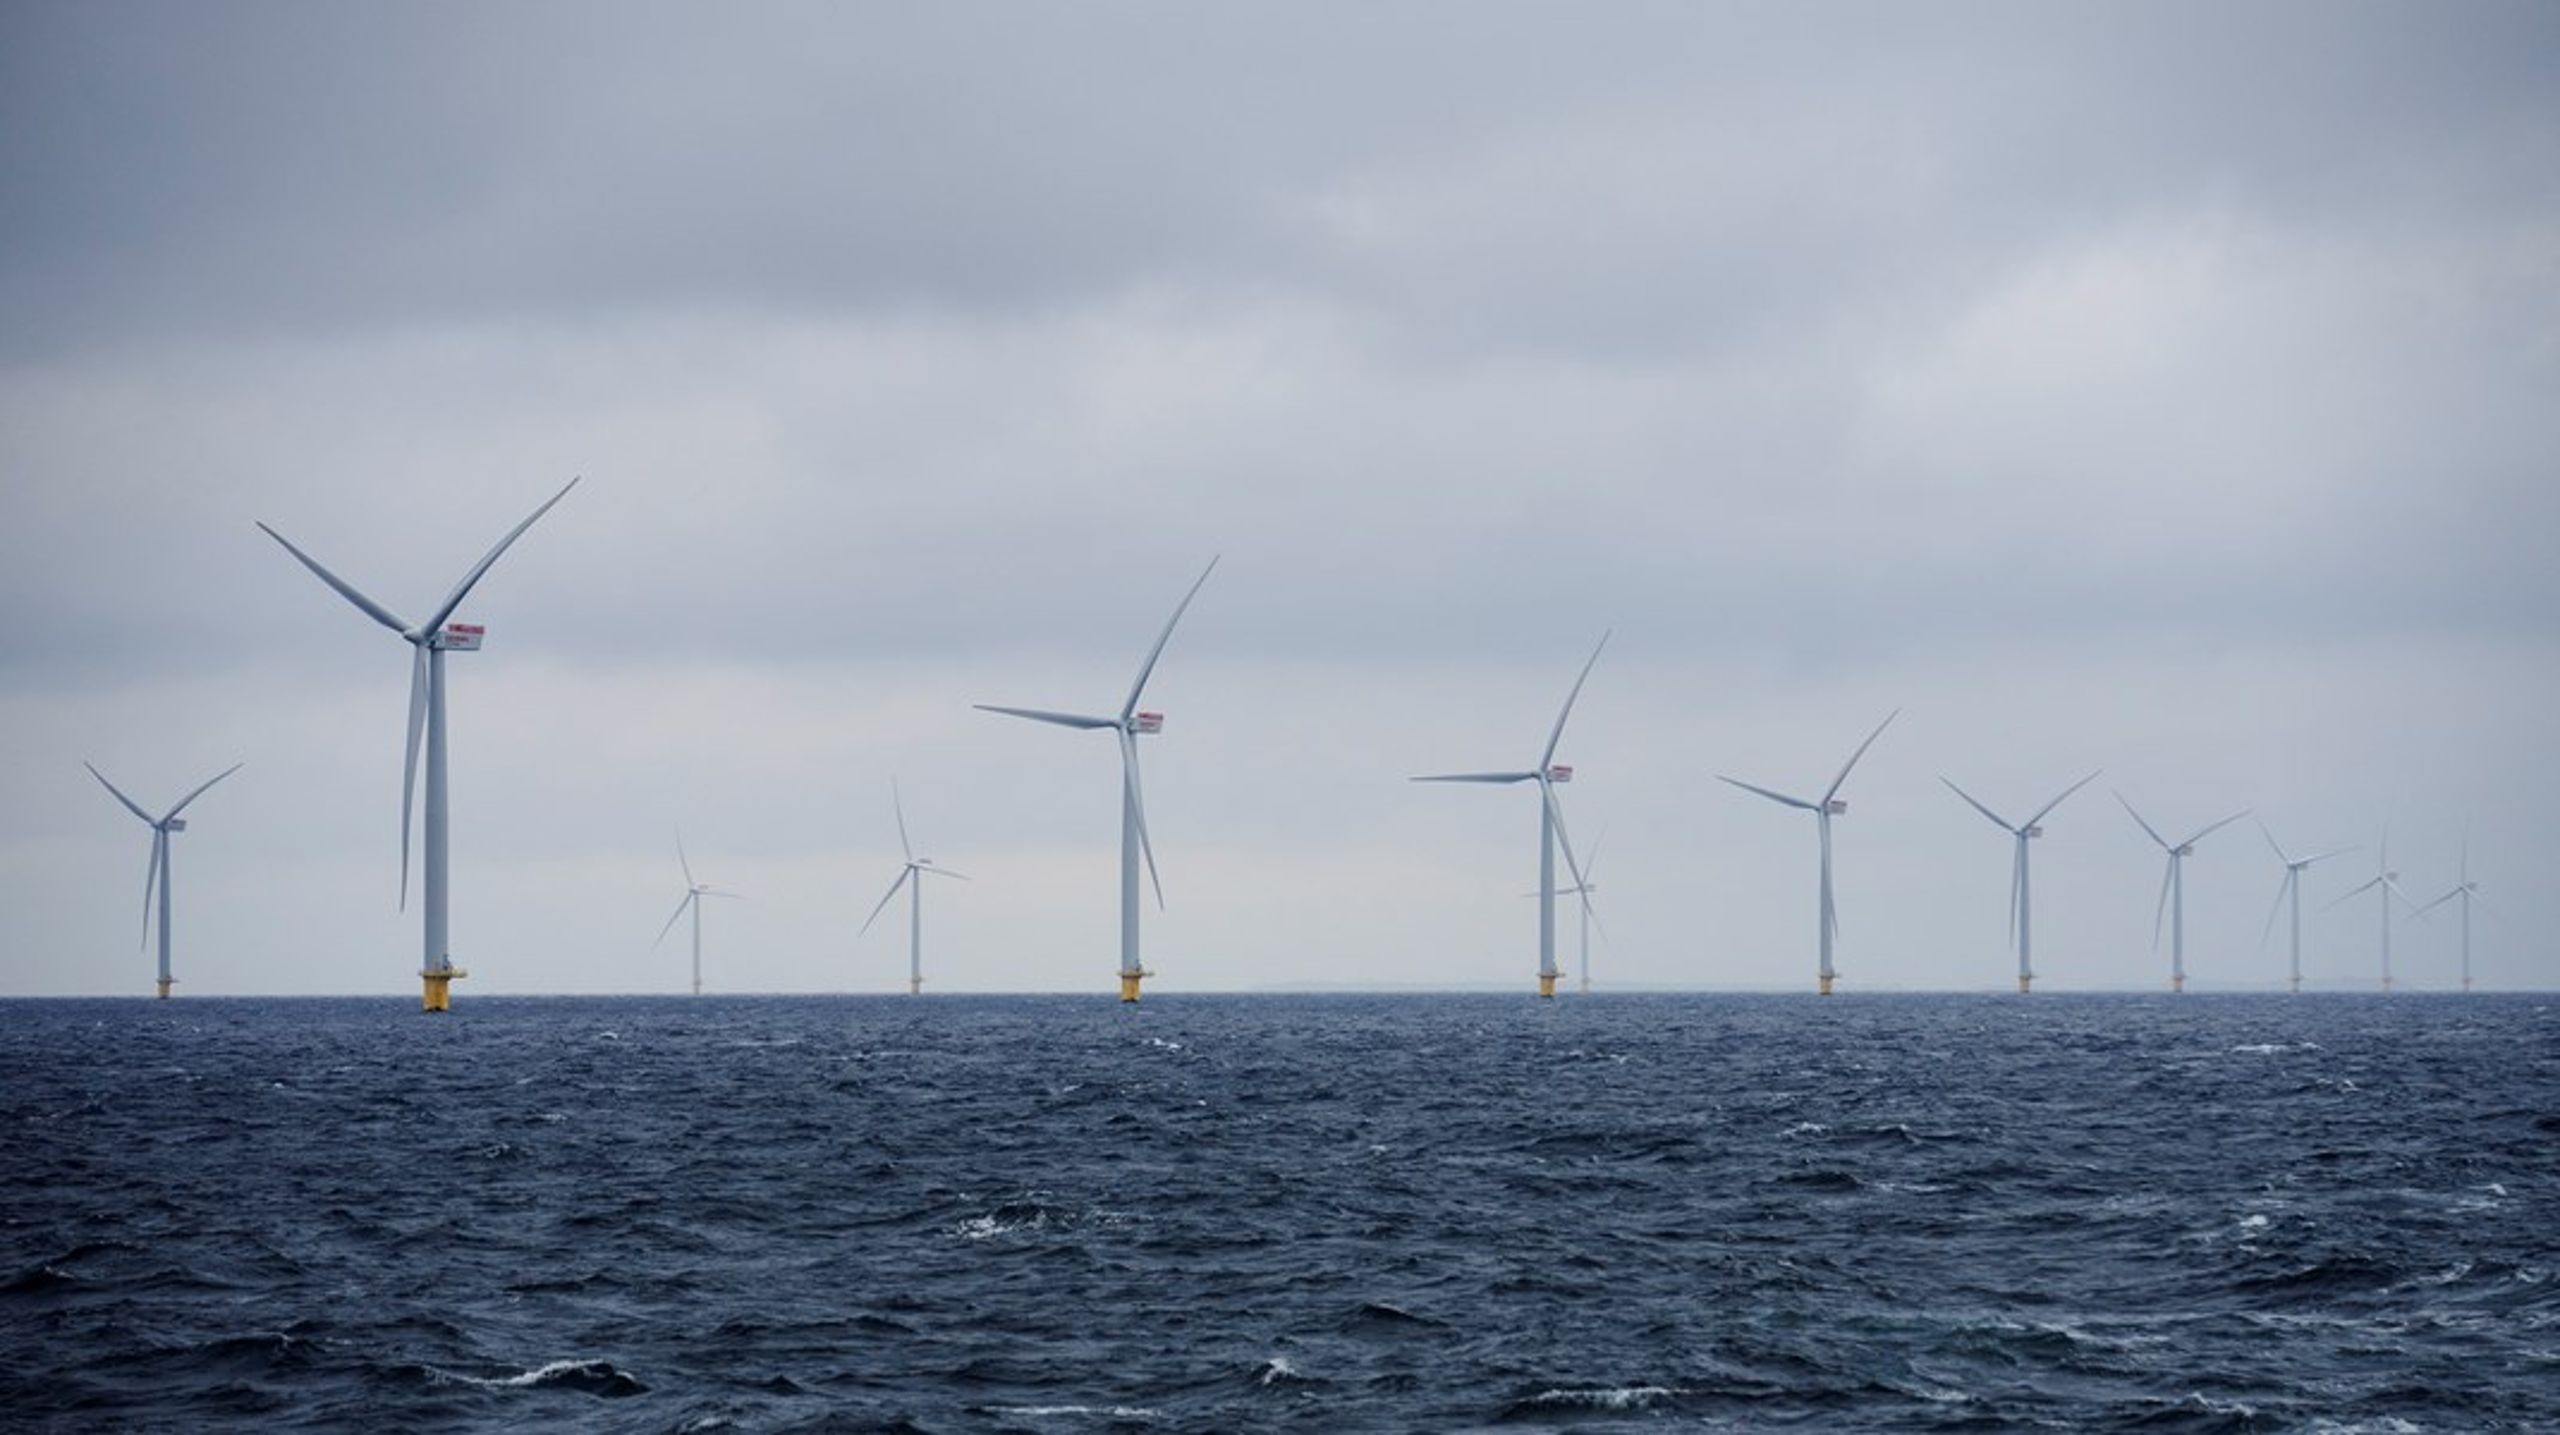 Bæredygtighed, biodiversitet og skattetransparens bør selvfølgelig være faste krav for havvind i Danmark, skriver Kristian Jensen.